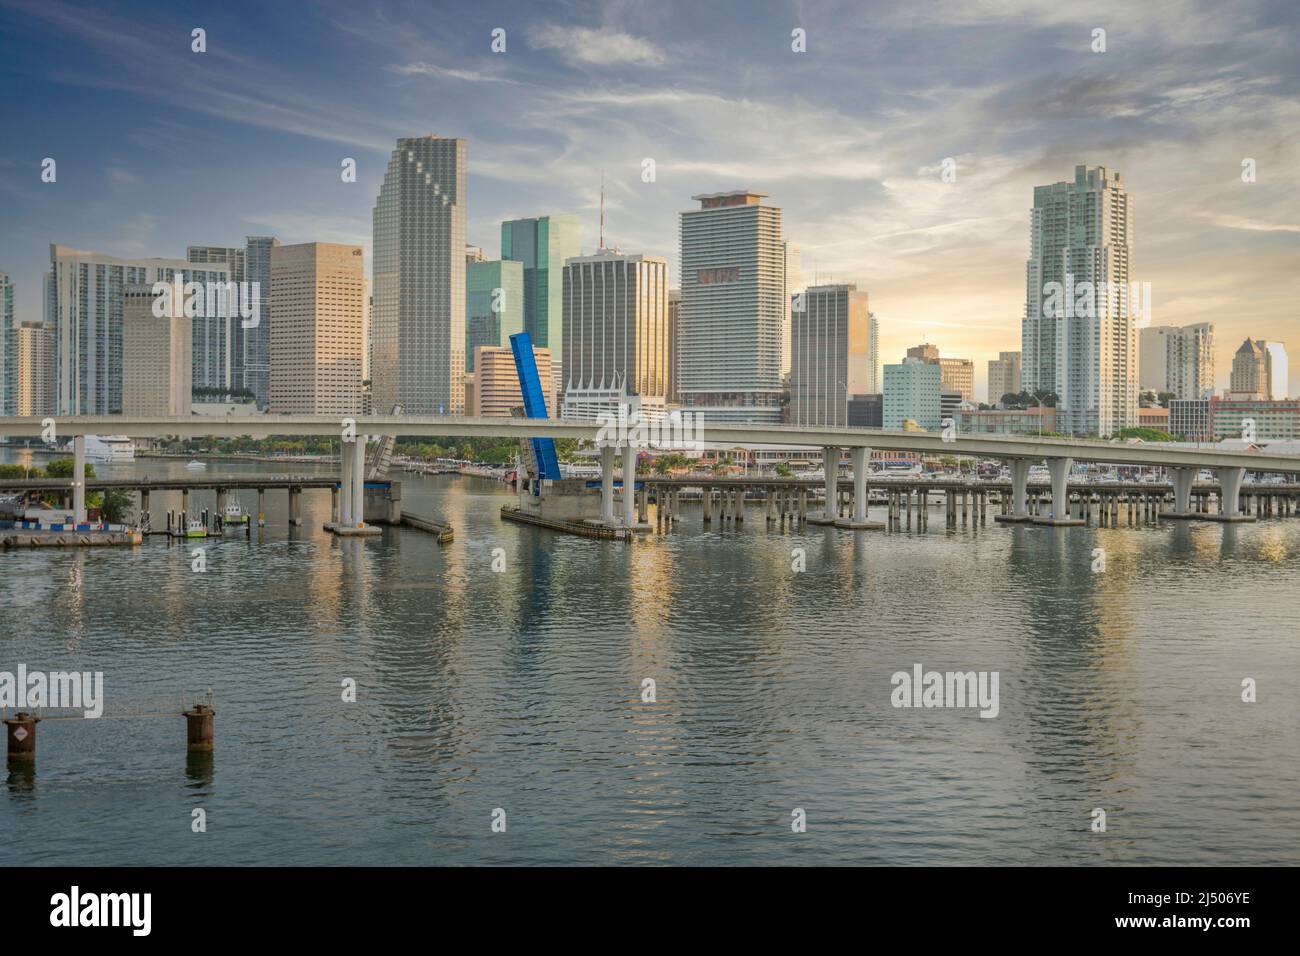 Ein Blick auf die Skyline von Miami am späten Nachmittag von einem Kreuzschiff, das in den Hafen kommt. Stockfoto